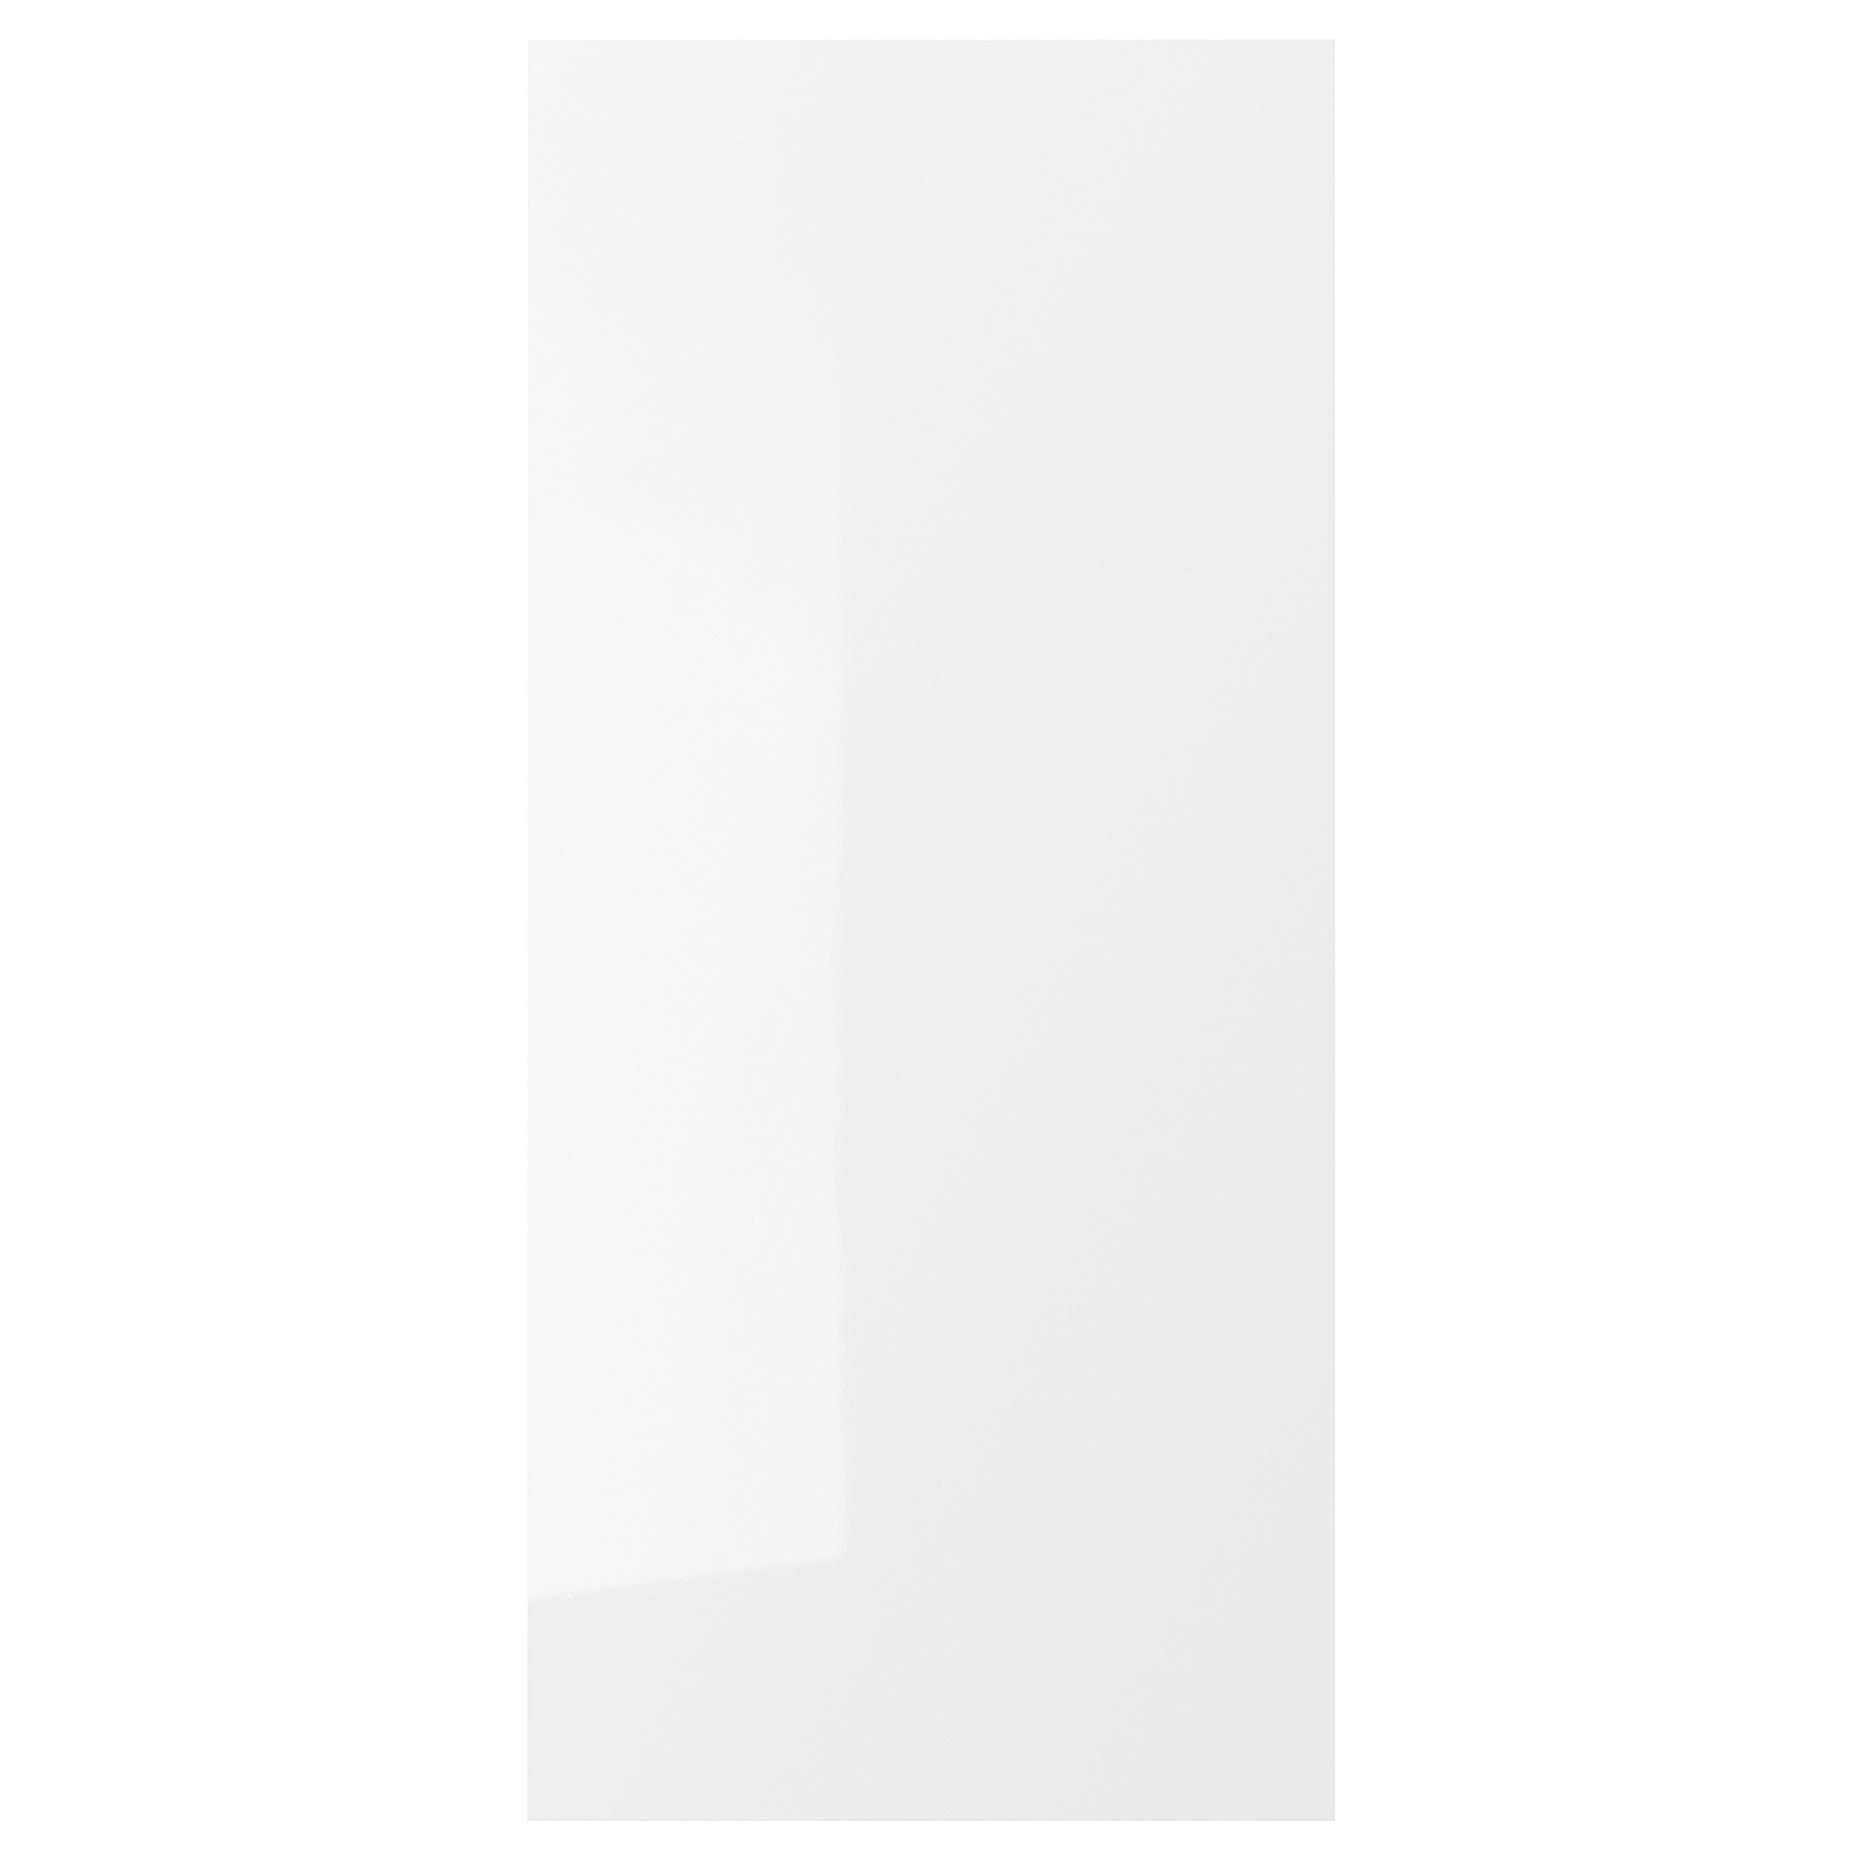 FÖRBÄTTRA, πλαϊνή επιφάνεια/γυαλιστερό, 39x86 cm, 005.678.42